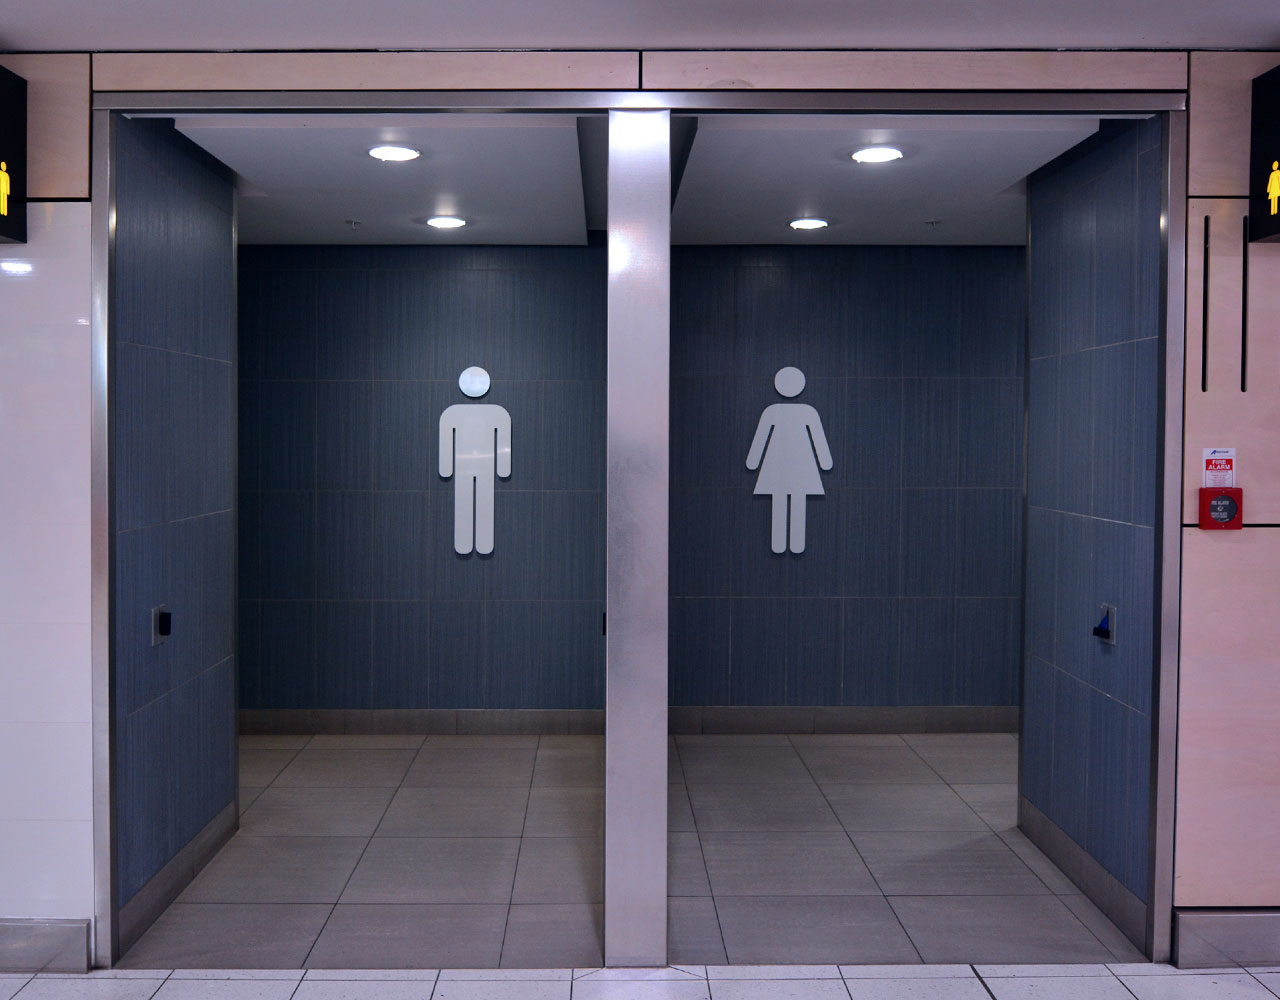 Quarantine quickie public restroom close best adult free images